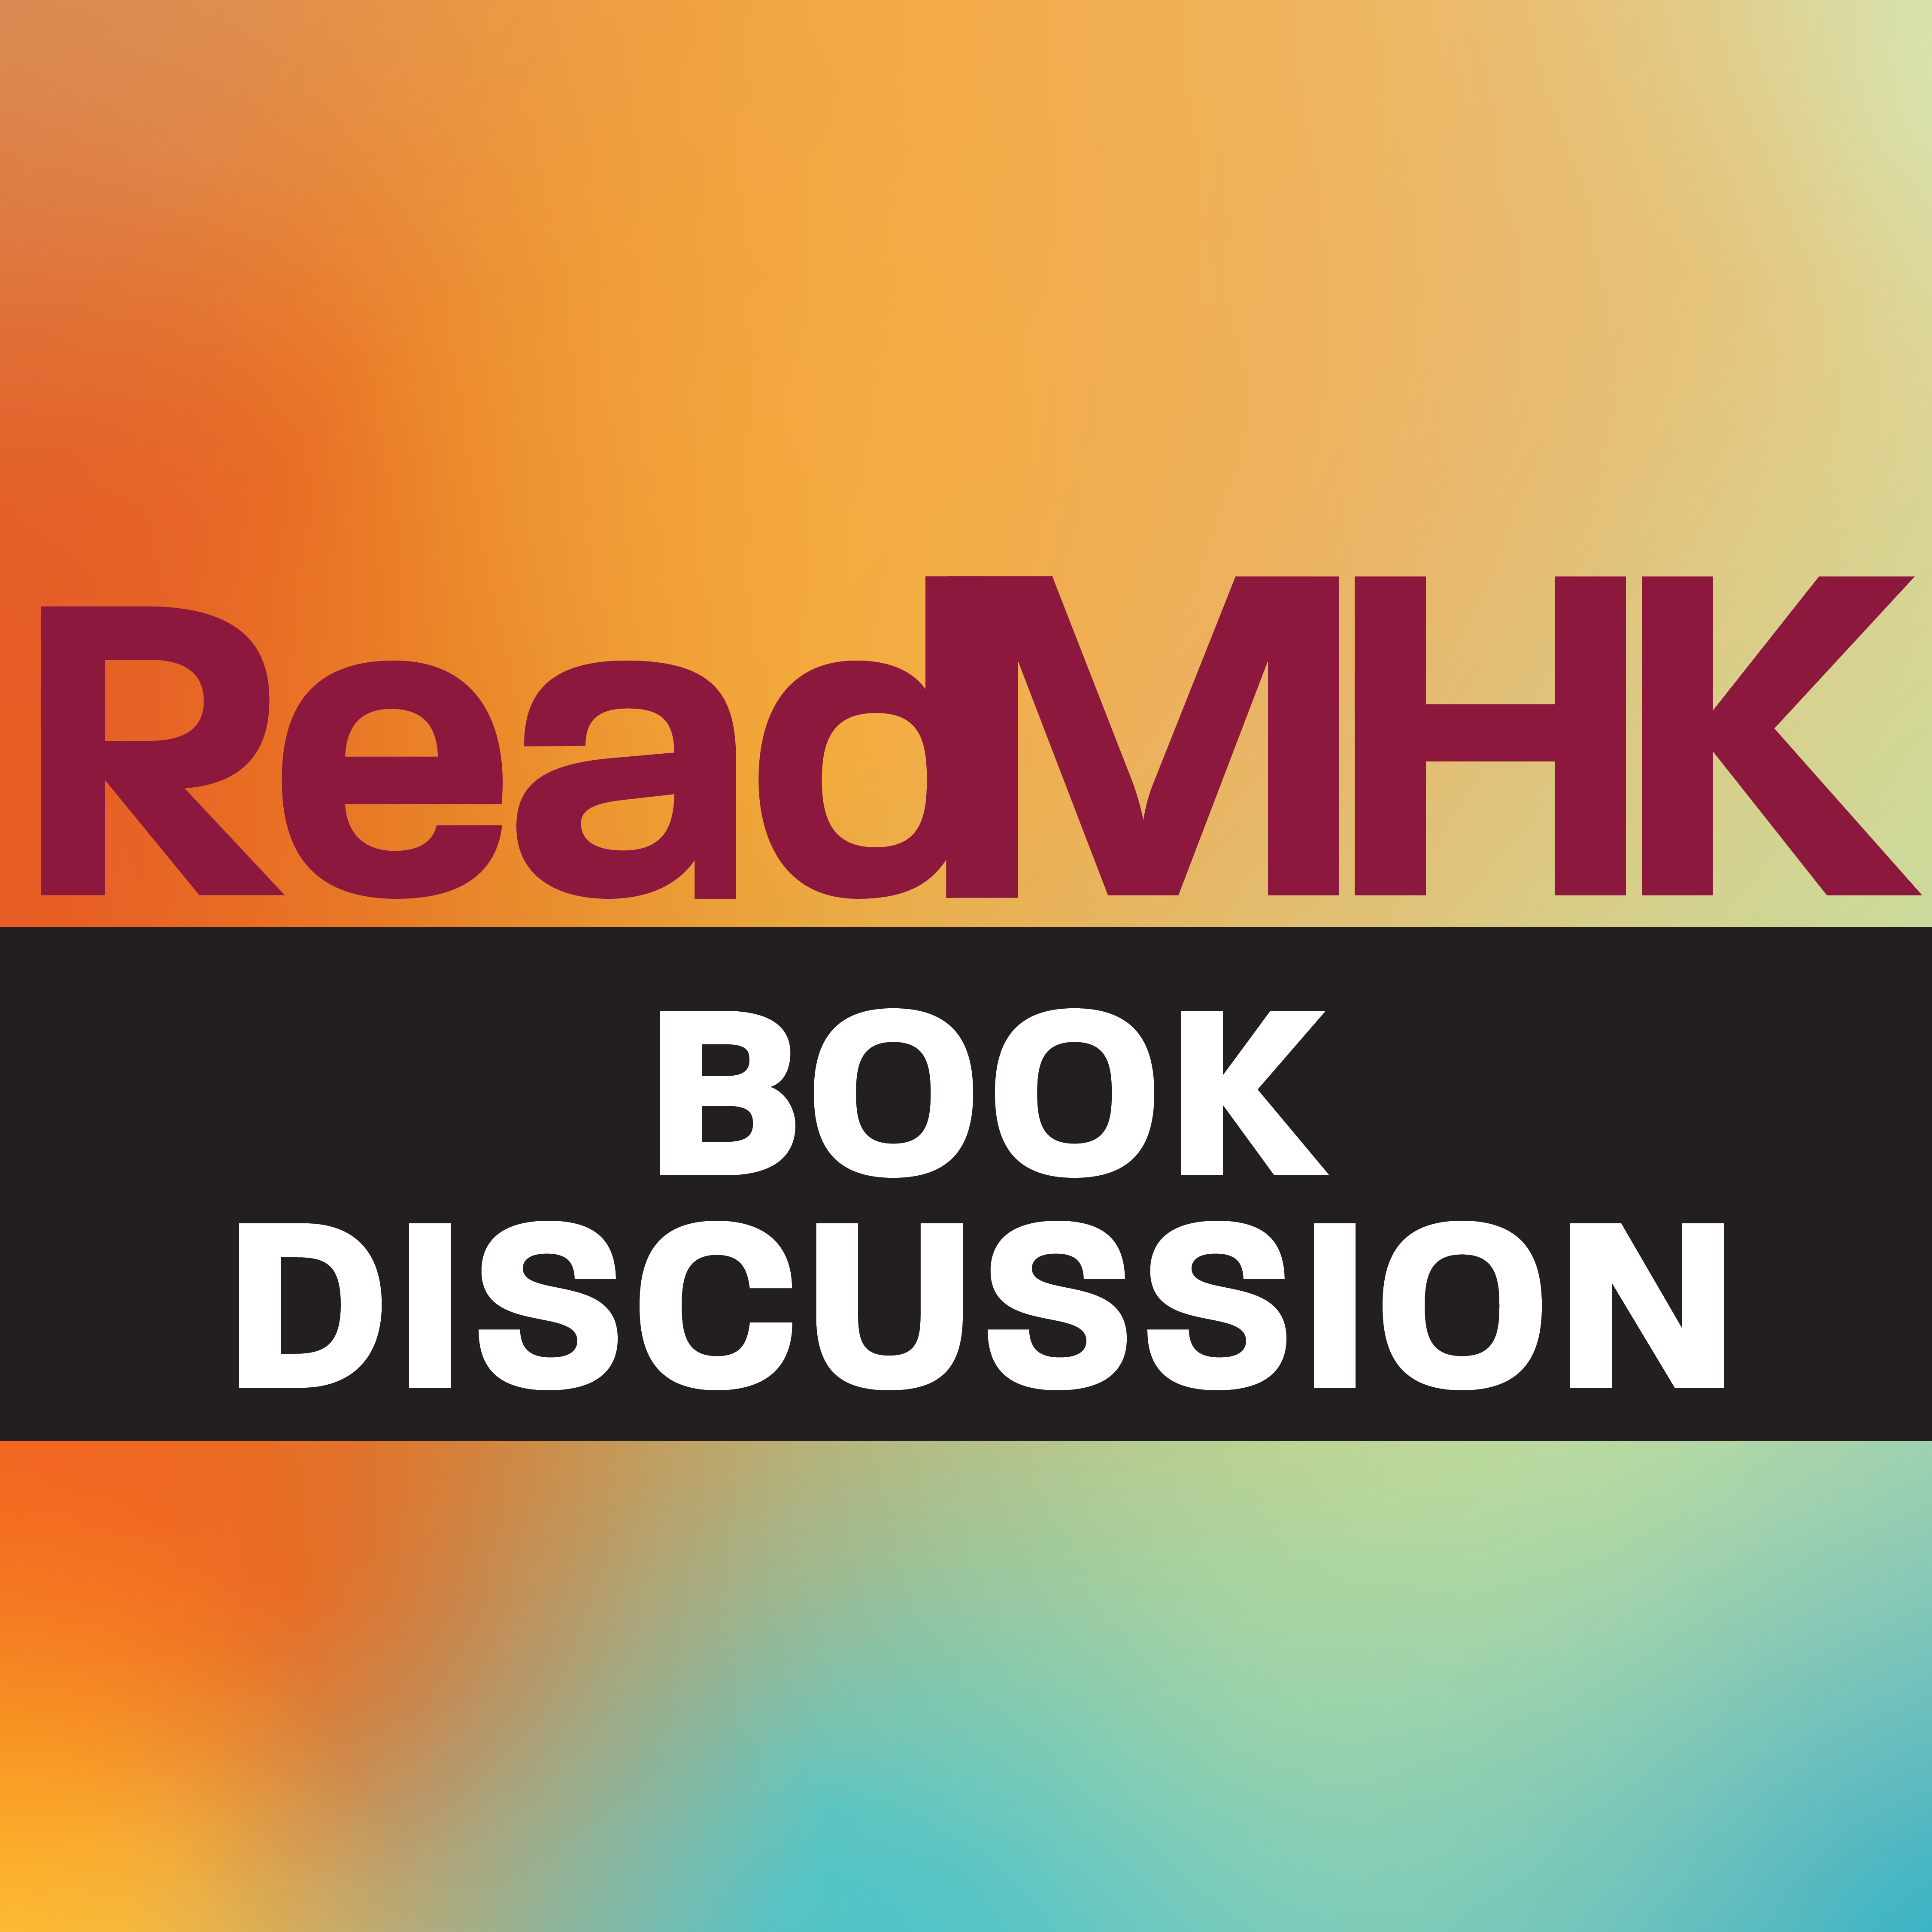 ReadMHK Book Discussion